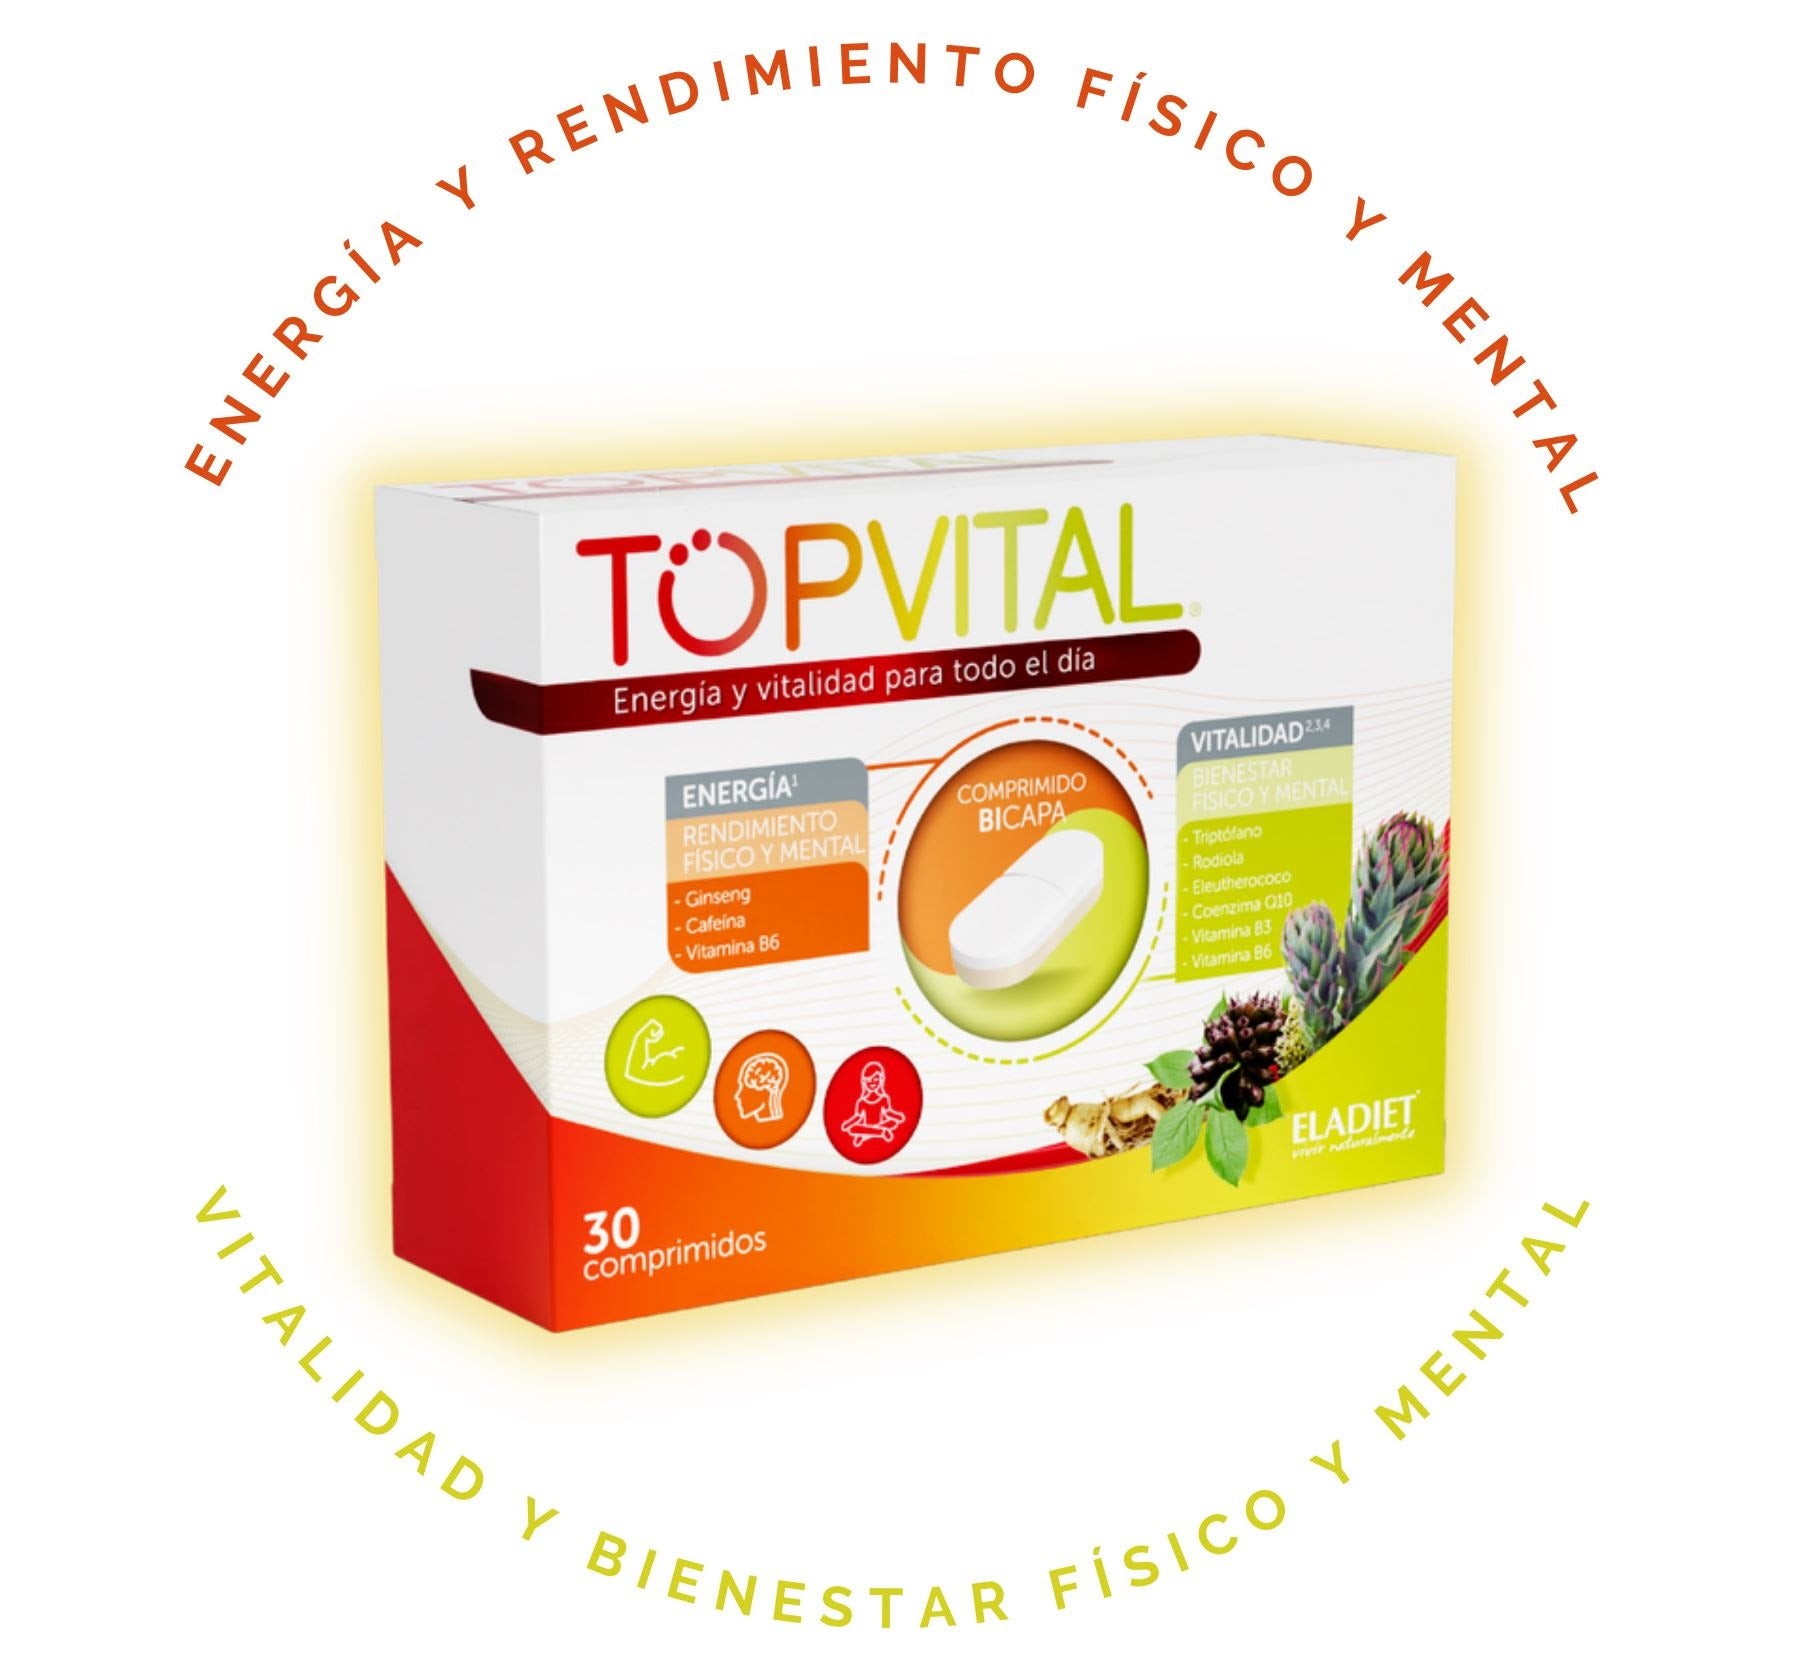 Eladiet - Eladiet TopVital 30 comprimidos (Vitalidad)